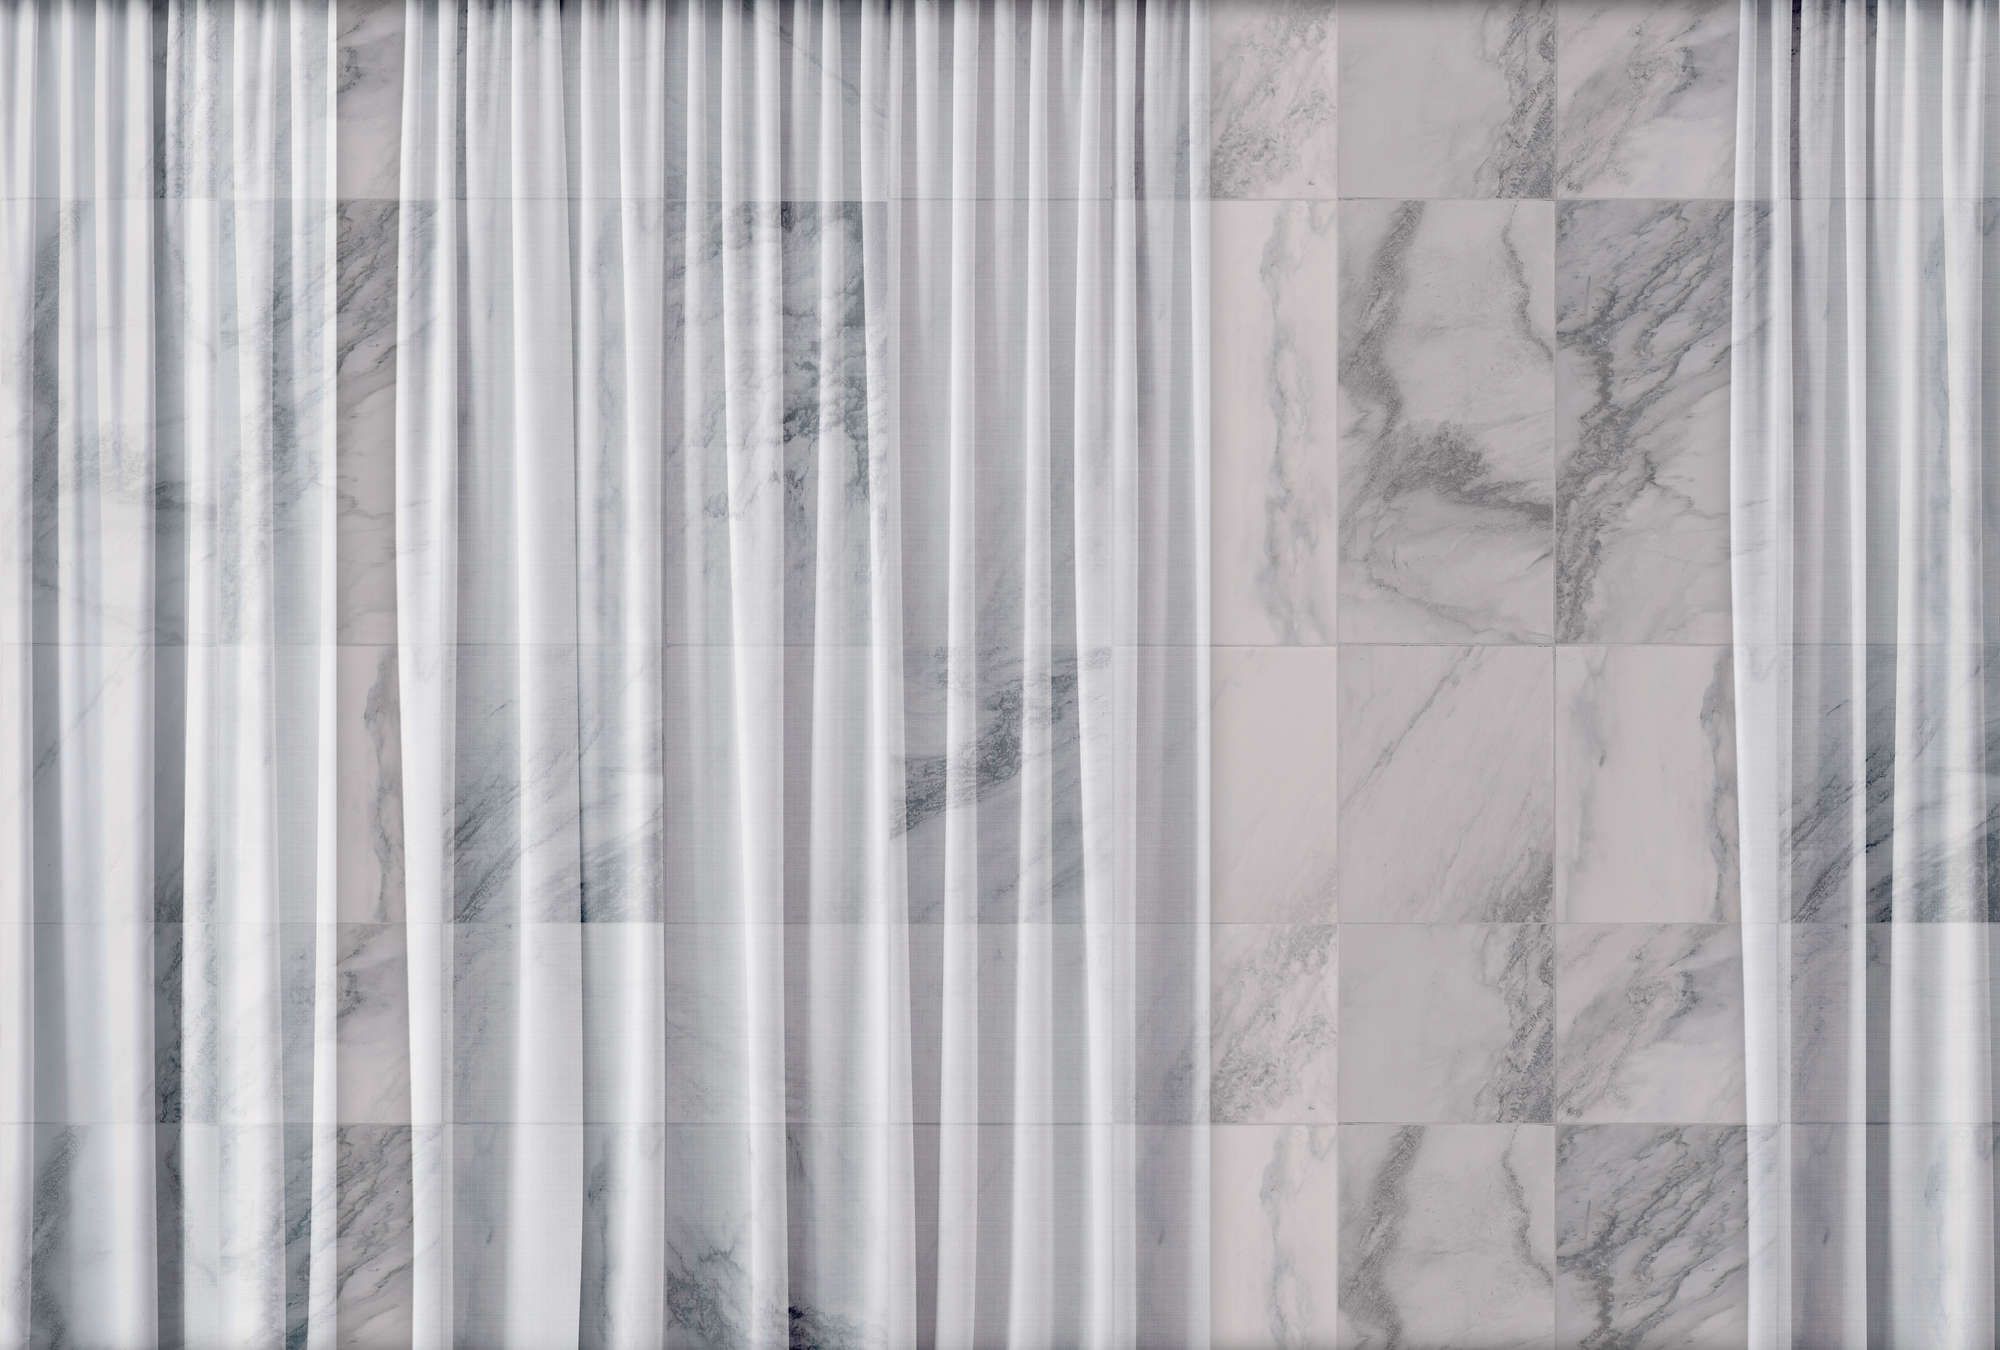             Digital behang »nova 1« - Discreet vallend wit gordijn voor een marmeren muur - Gladde, licht parelmoerachtige vliesstof
        